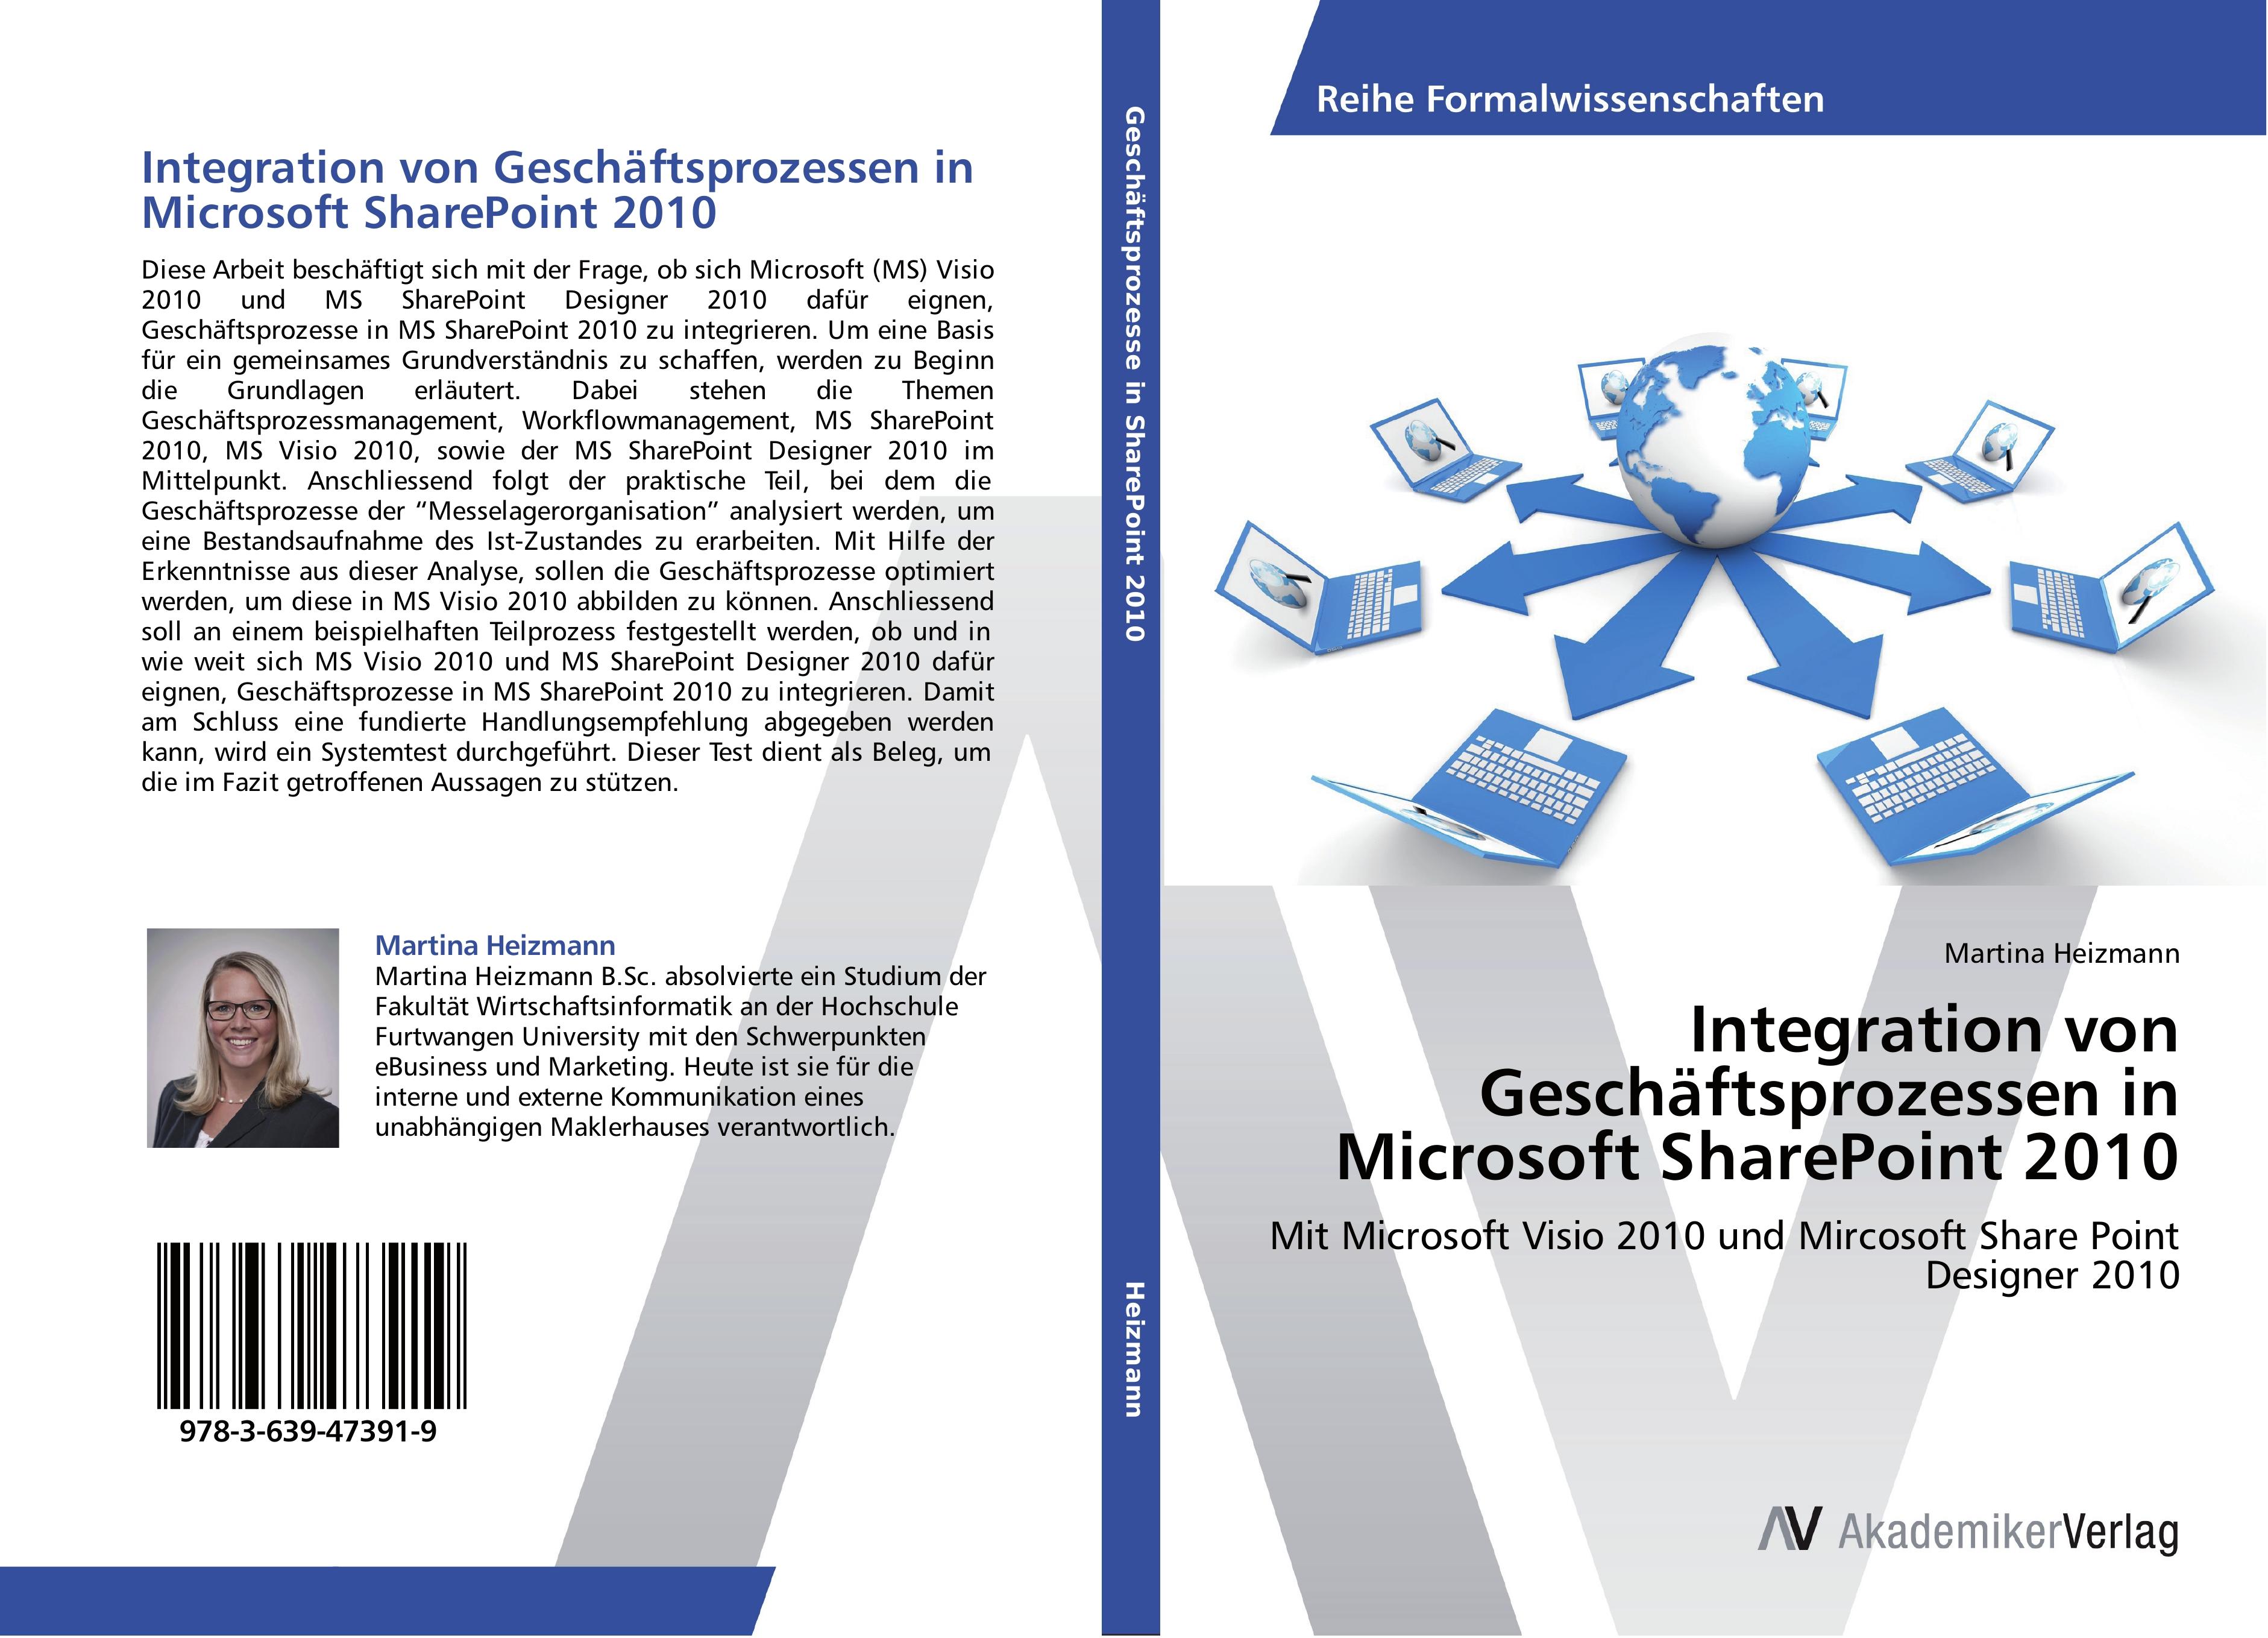 Integration von Geschaeftsprozessen in Microsoft SharePoint 2010 - Martina Heizmann